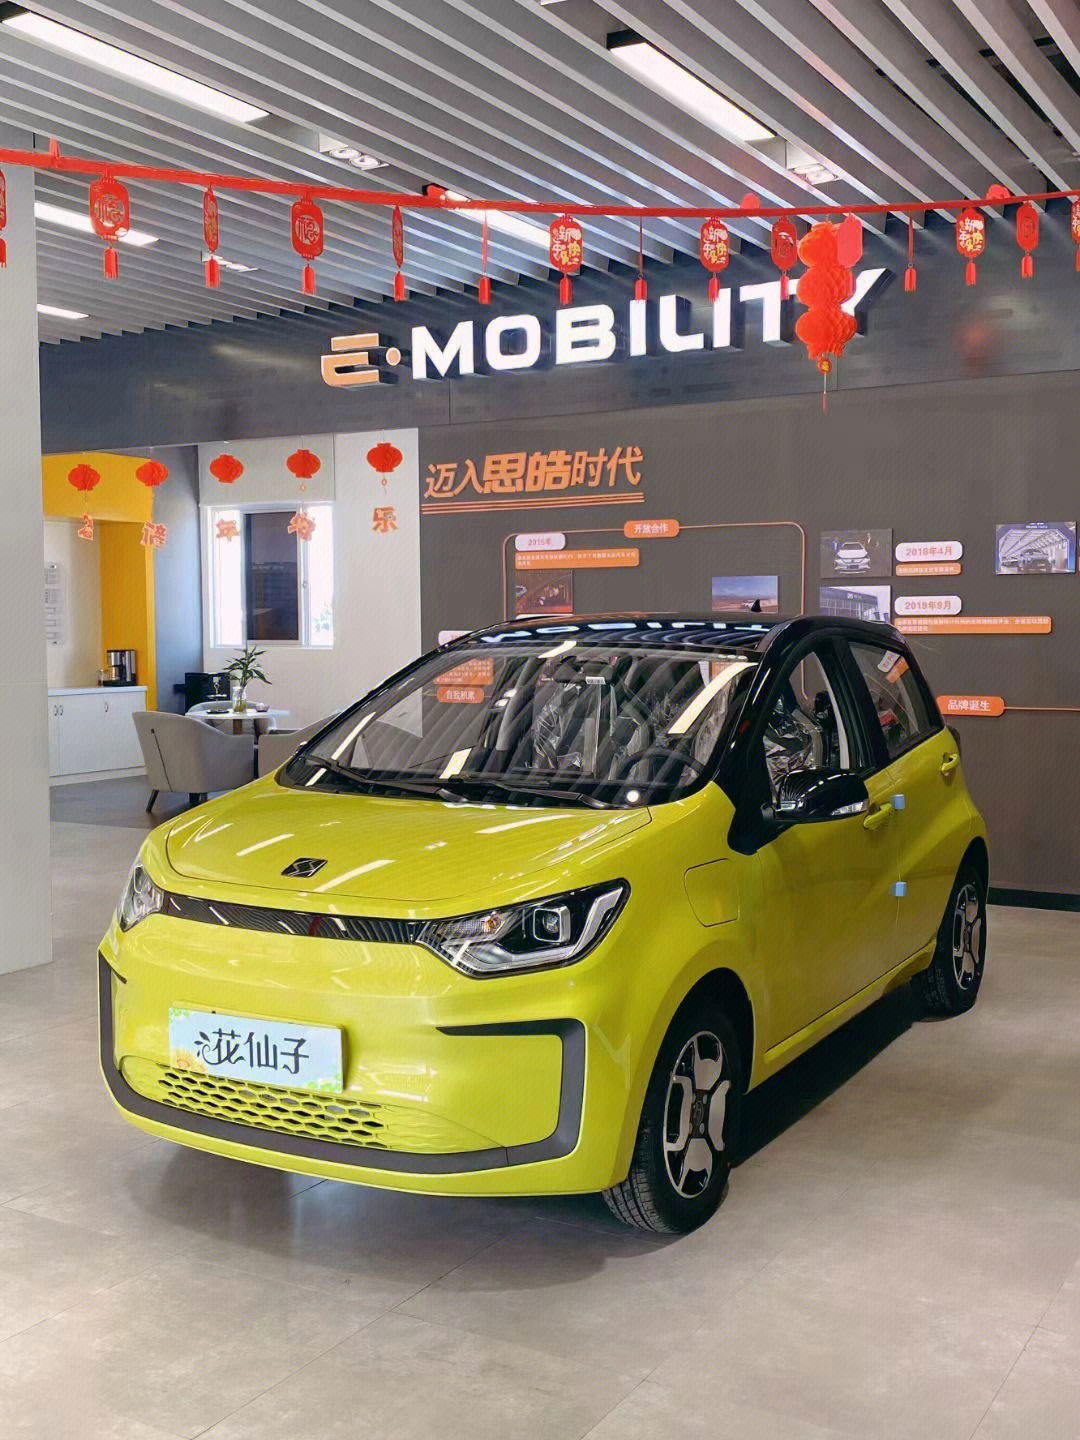 思皓e10x纯电动汽车,大众旗下品牌,支持快慢充,续航306公里,每公里低